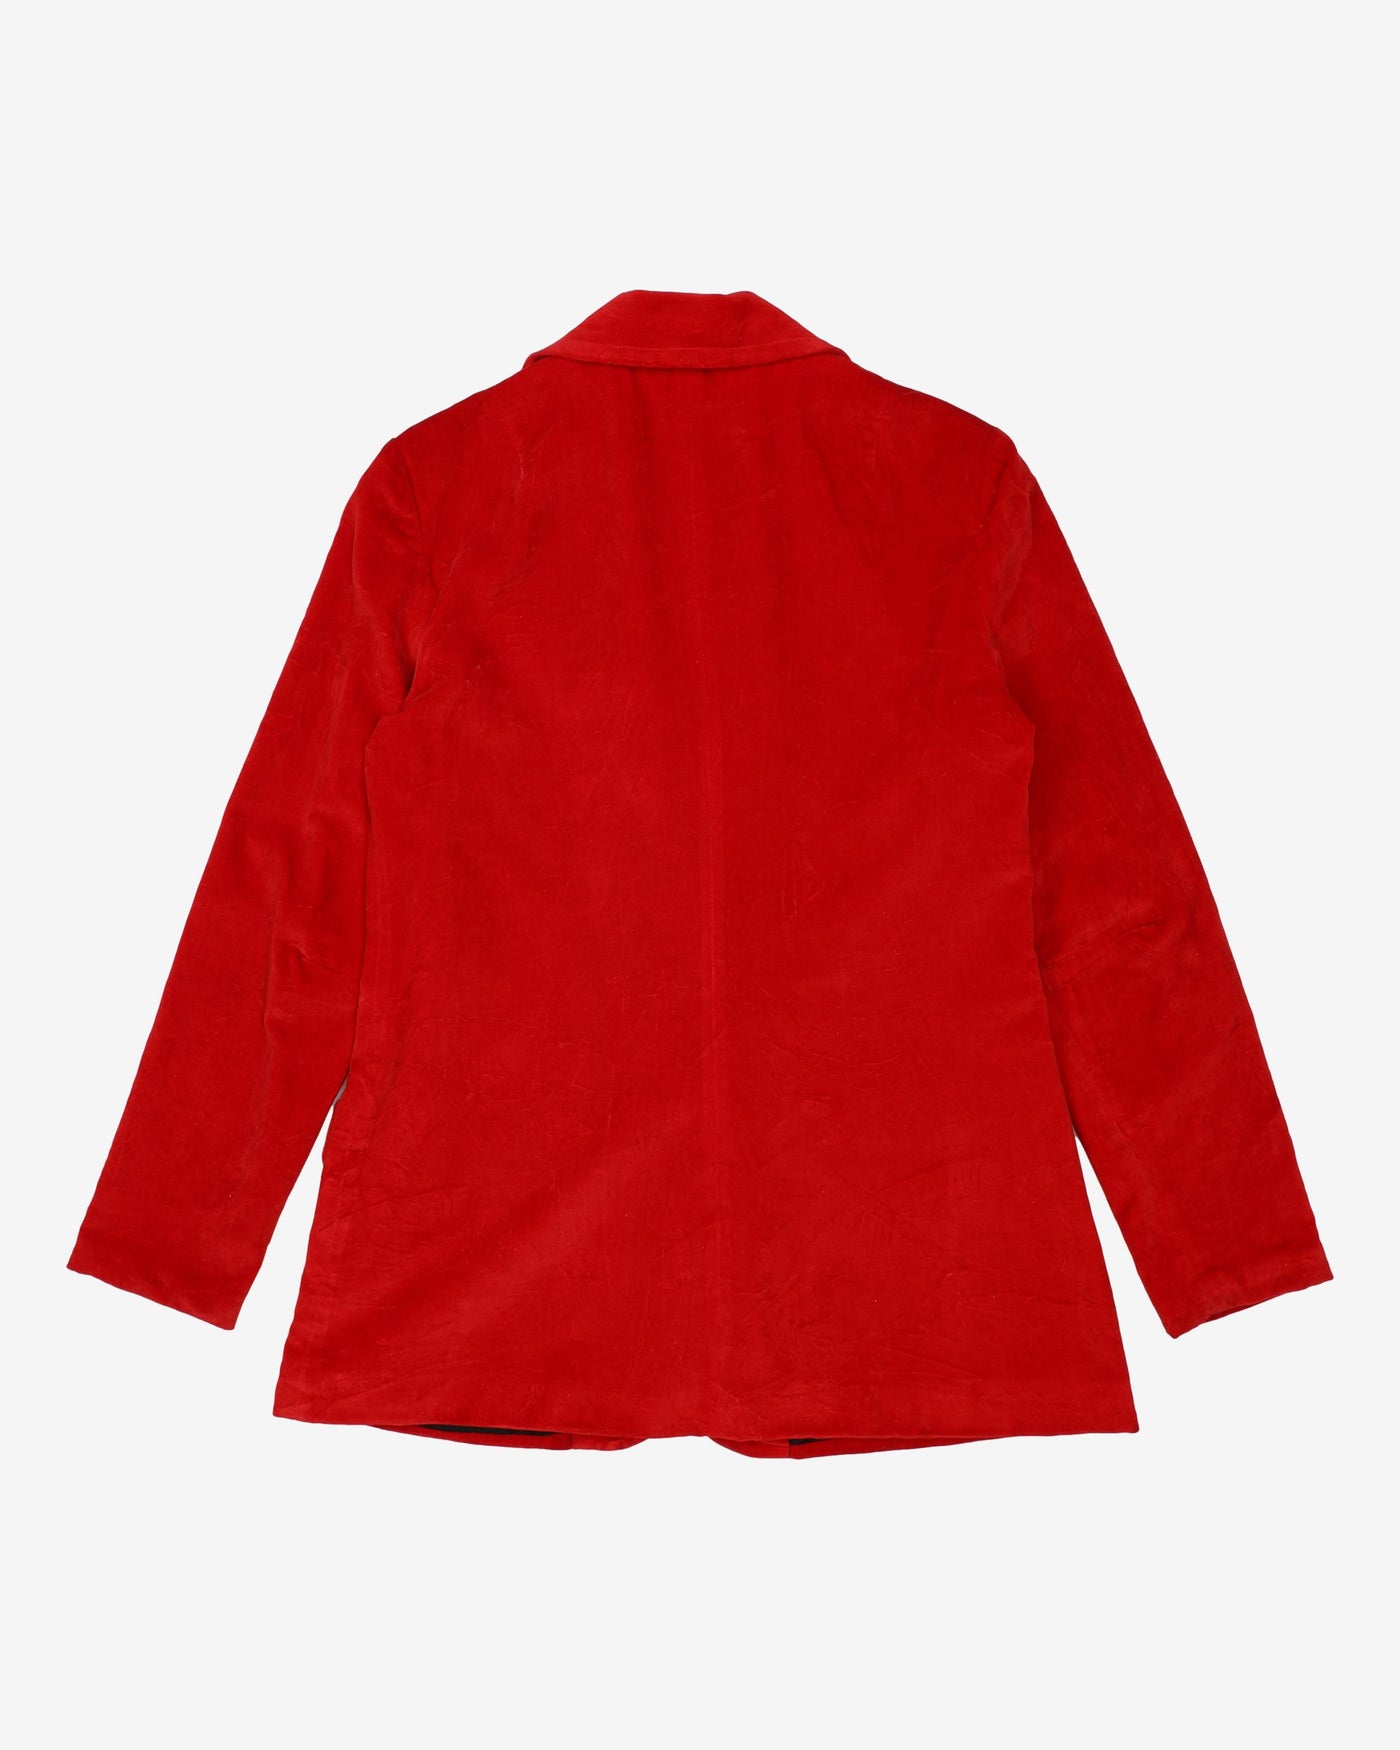 1970s Red Velvet Blazer Jacket - S